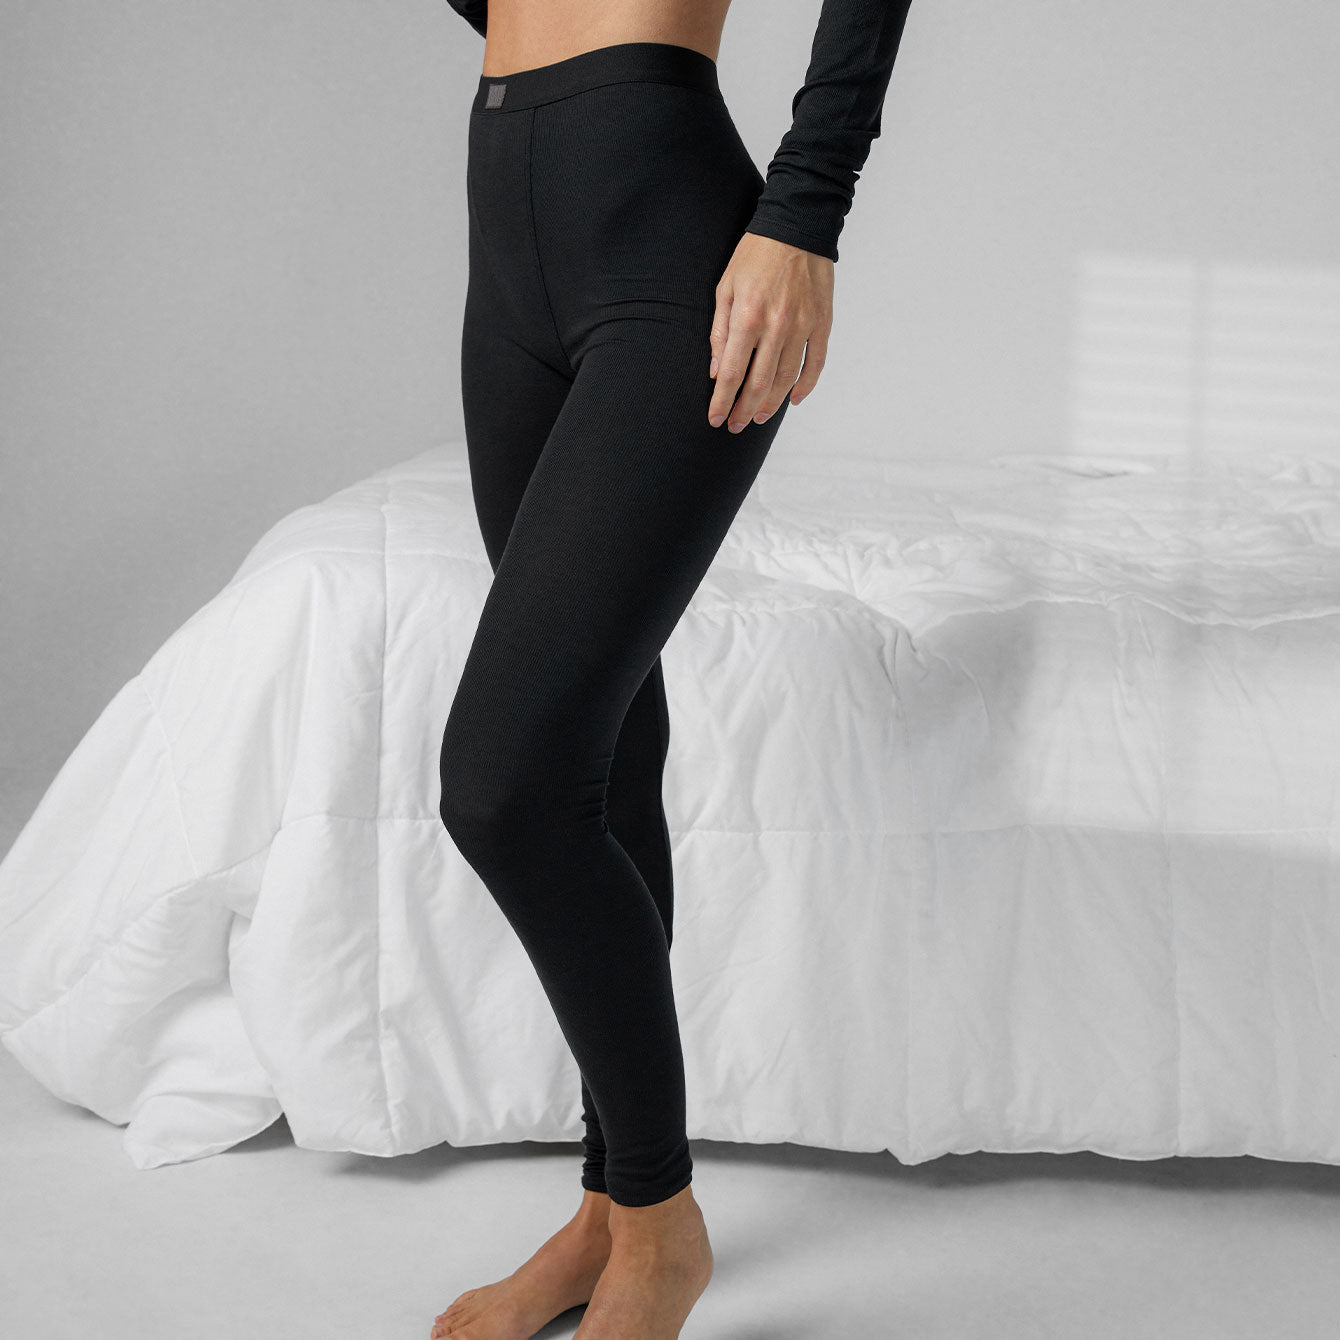 Lumana Leakproof Yoga Pant Leggings, 22 Inseam, Gray, 3X, Single Pair